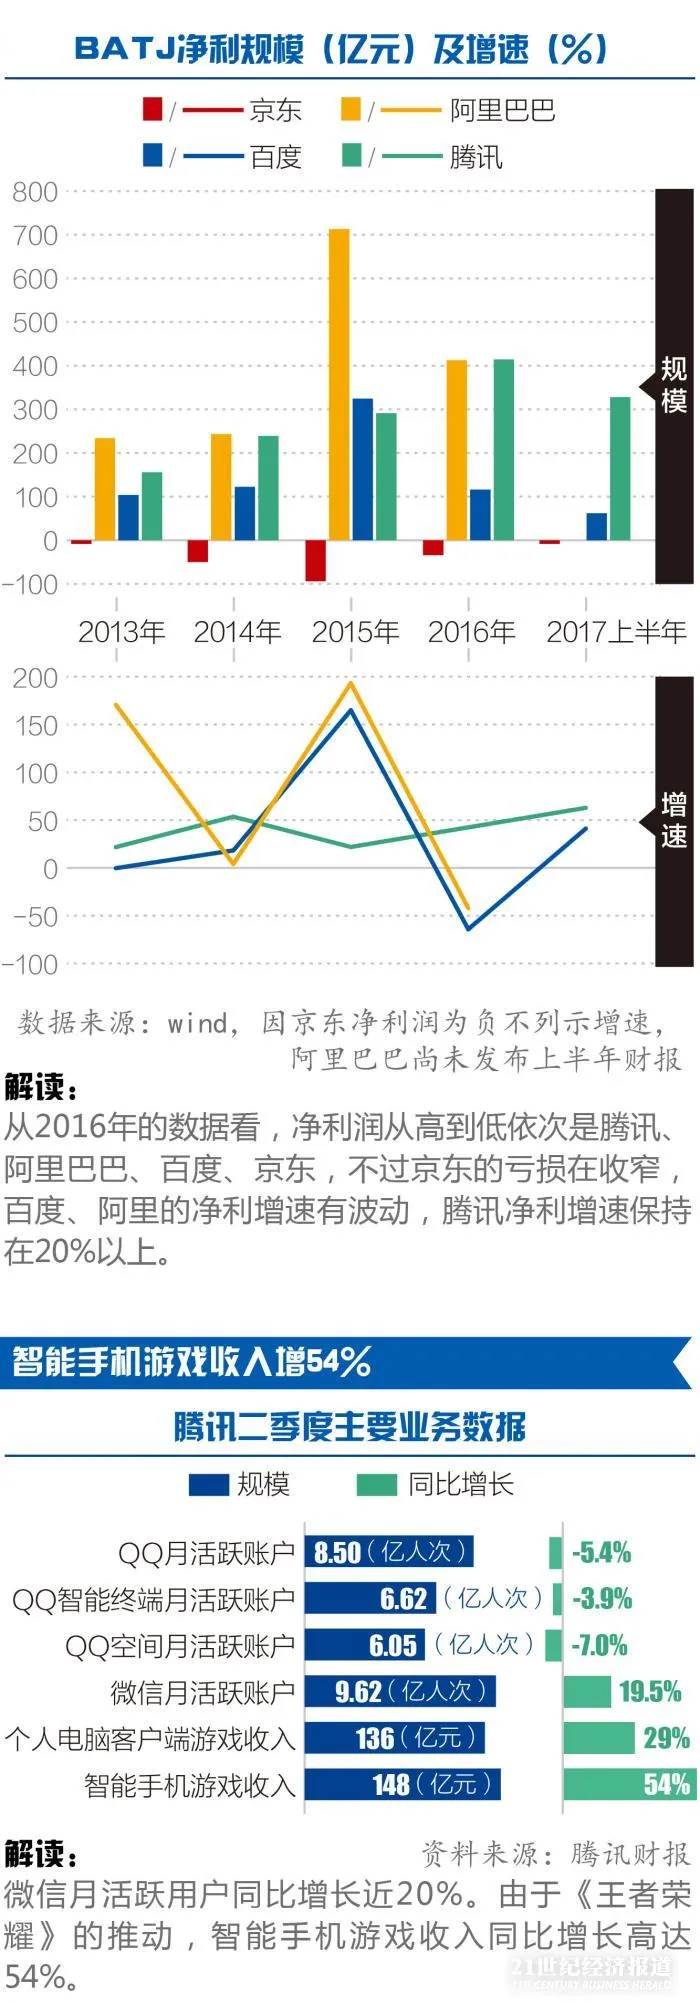 图说丨业绩驱动：阿里、腾讯、京东市值涨幅均超70%